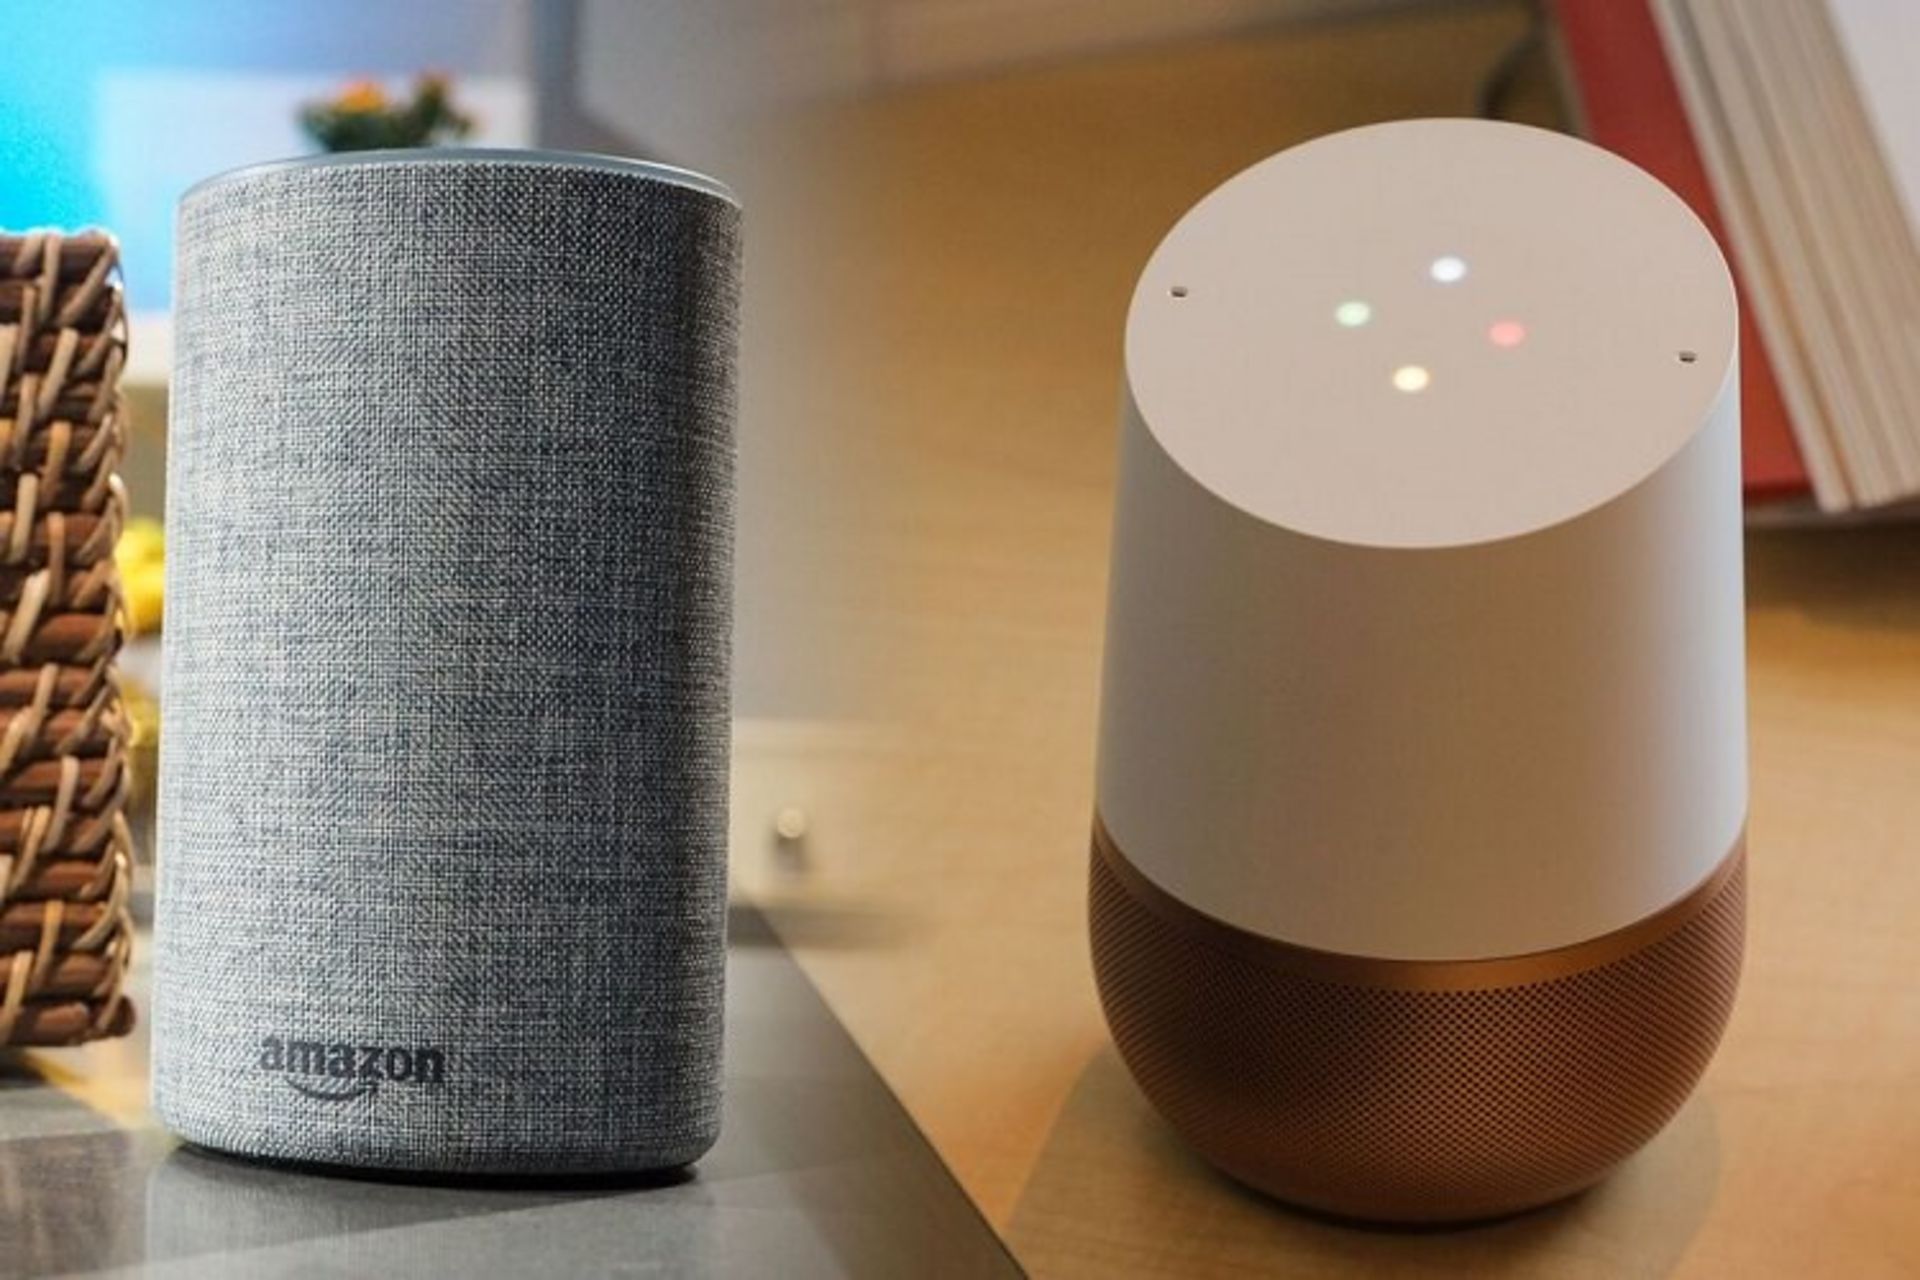 مرجع متخصصين ايران Amazon Echo, Google Home